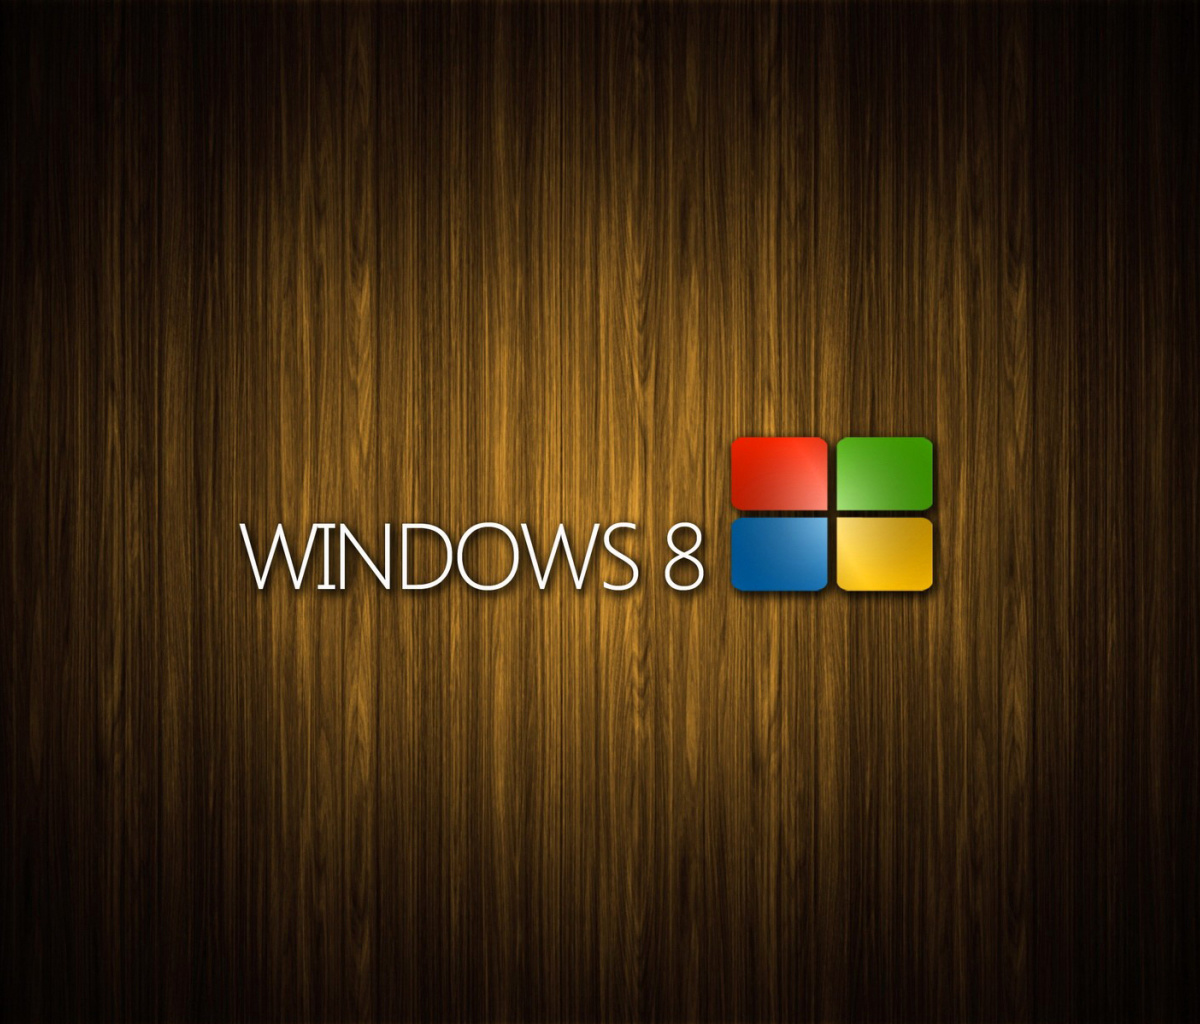 Windows 8 Wooden Emblem screenshot #1 1200x1024